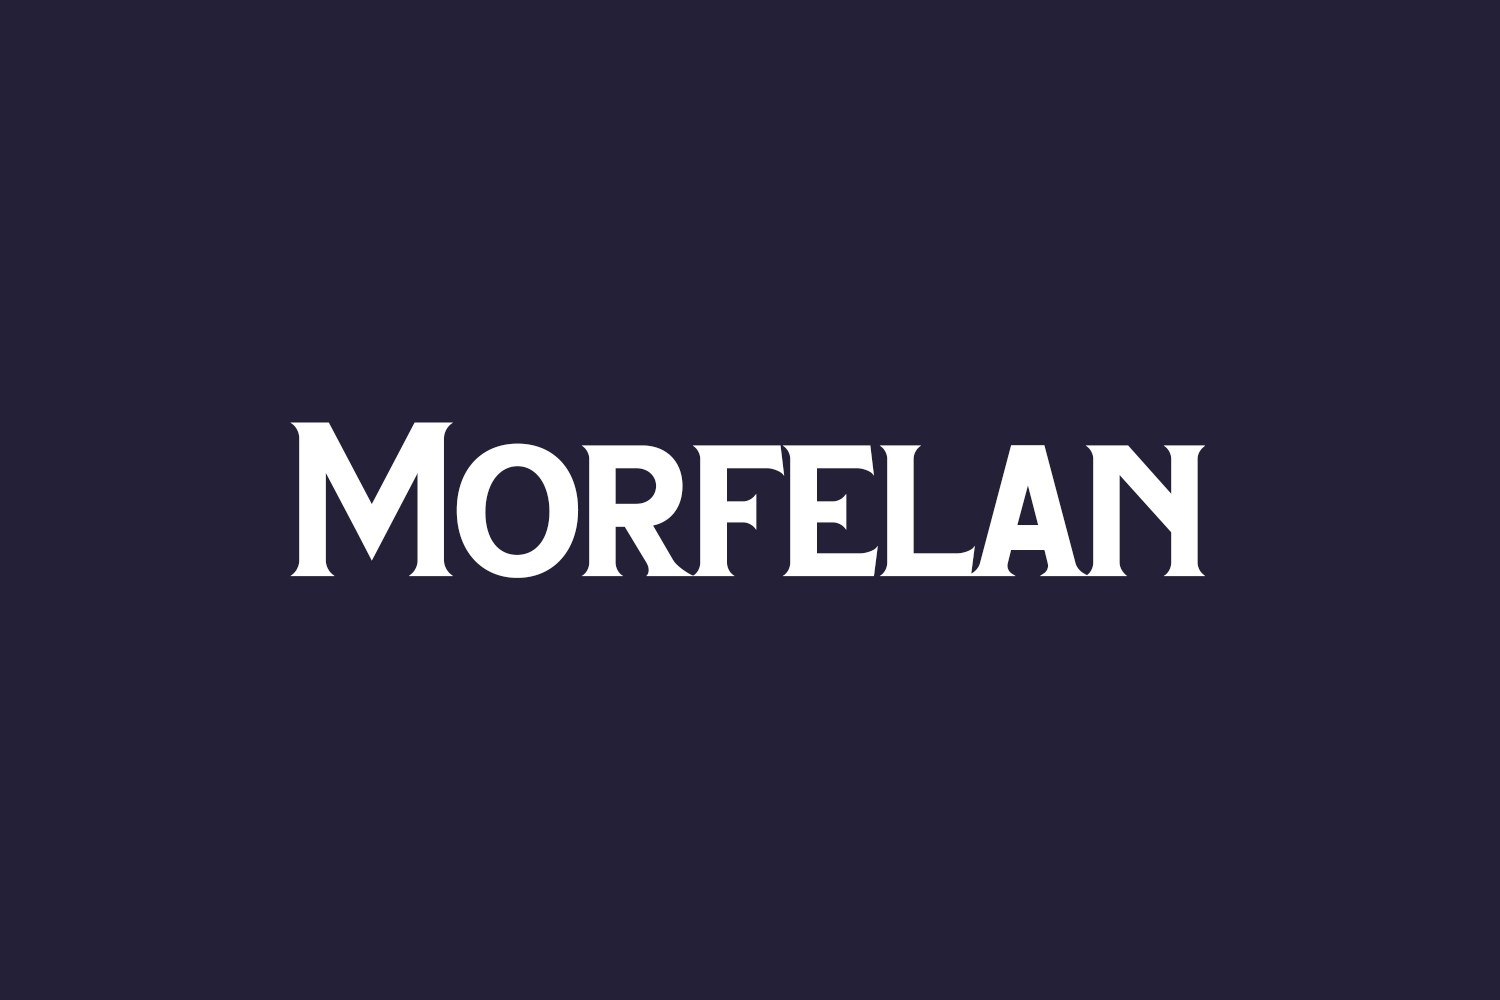 Morfelan Free Font